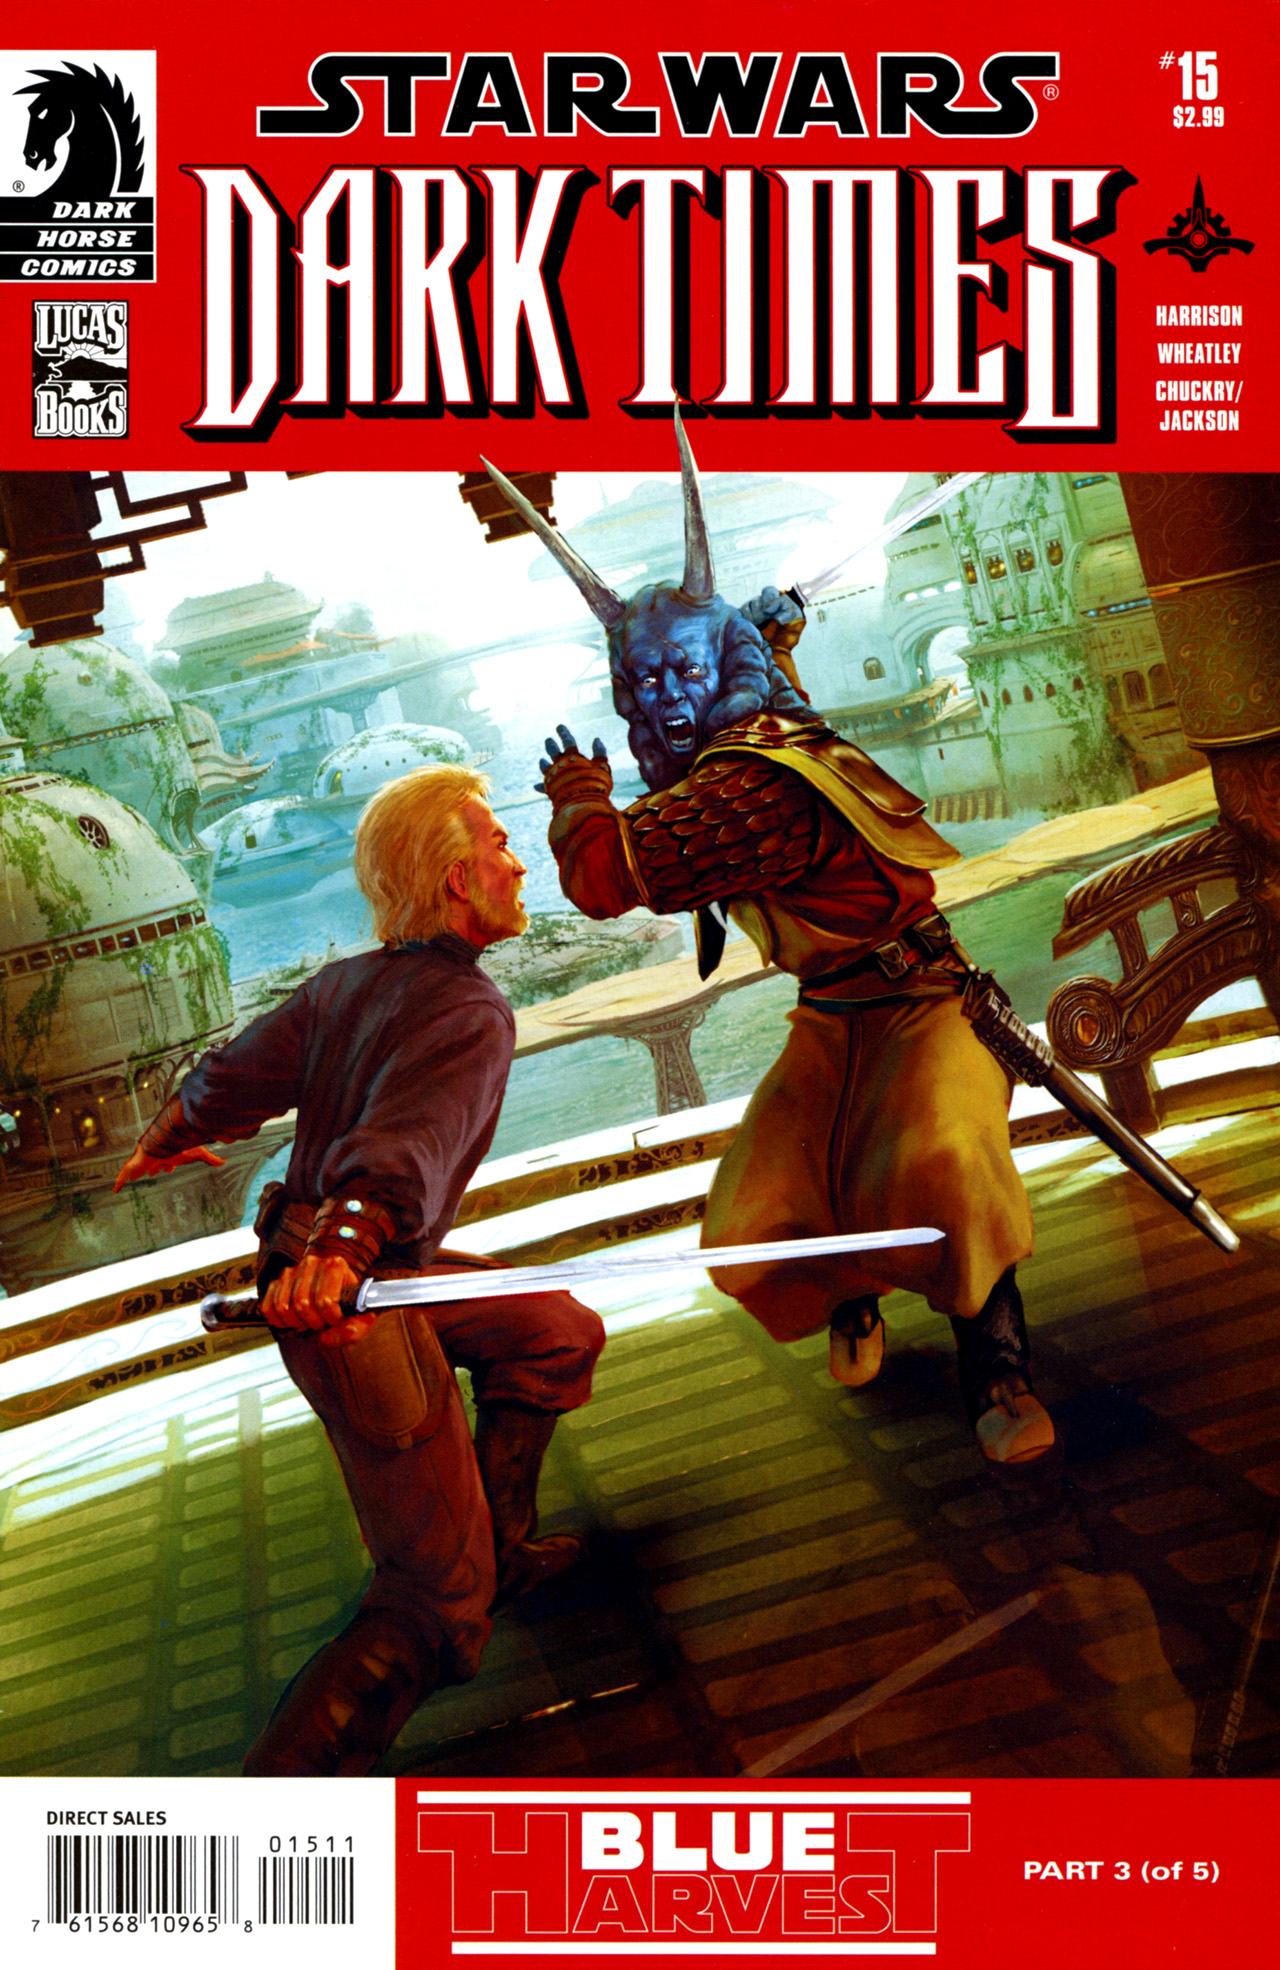 Star Wars: Dark Times issue 15 - Blue Harvest, Part 3 - Page 1